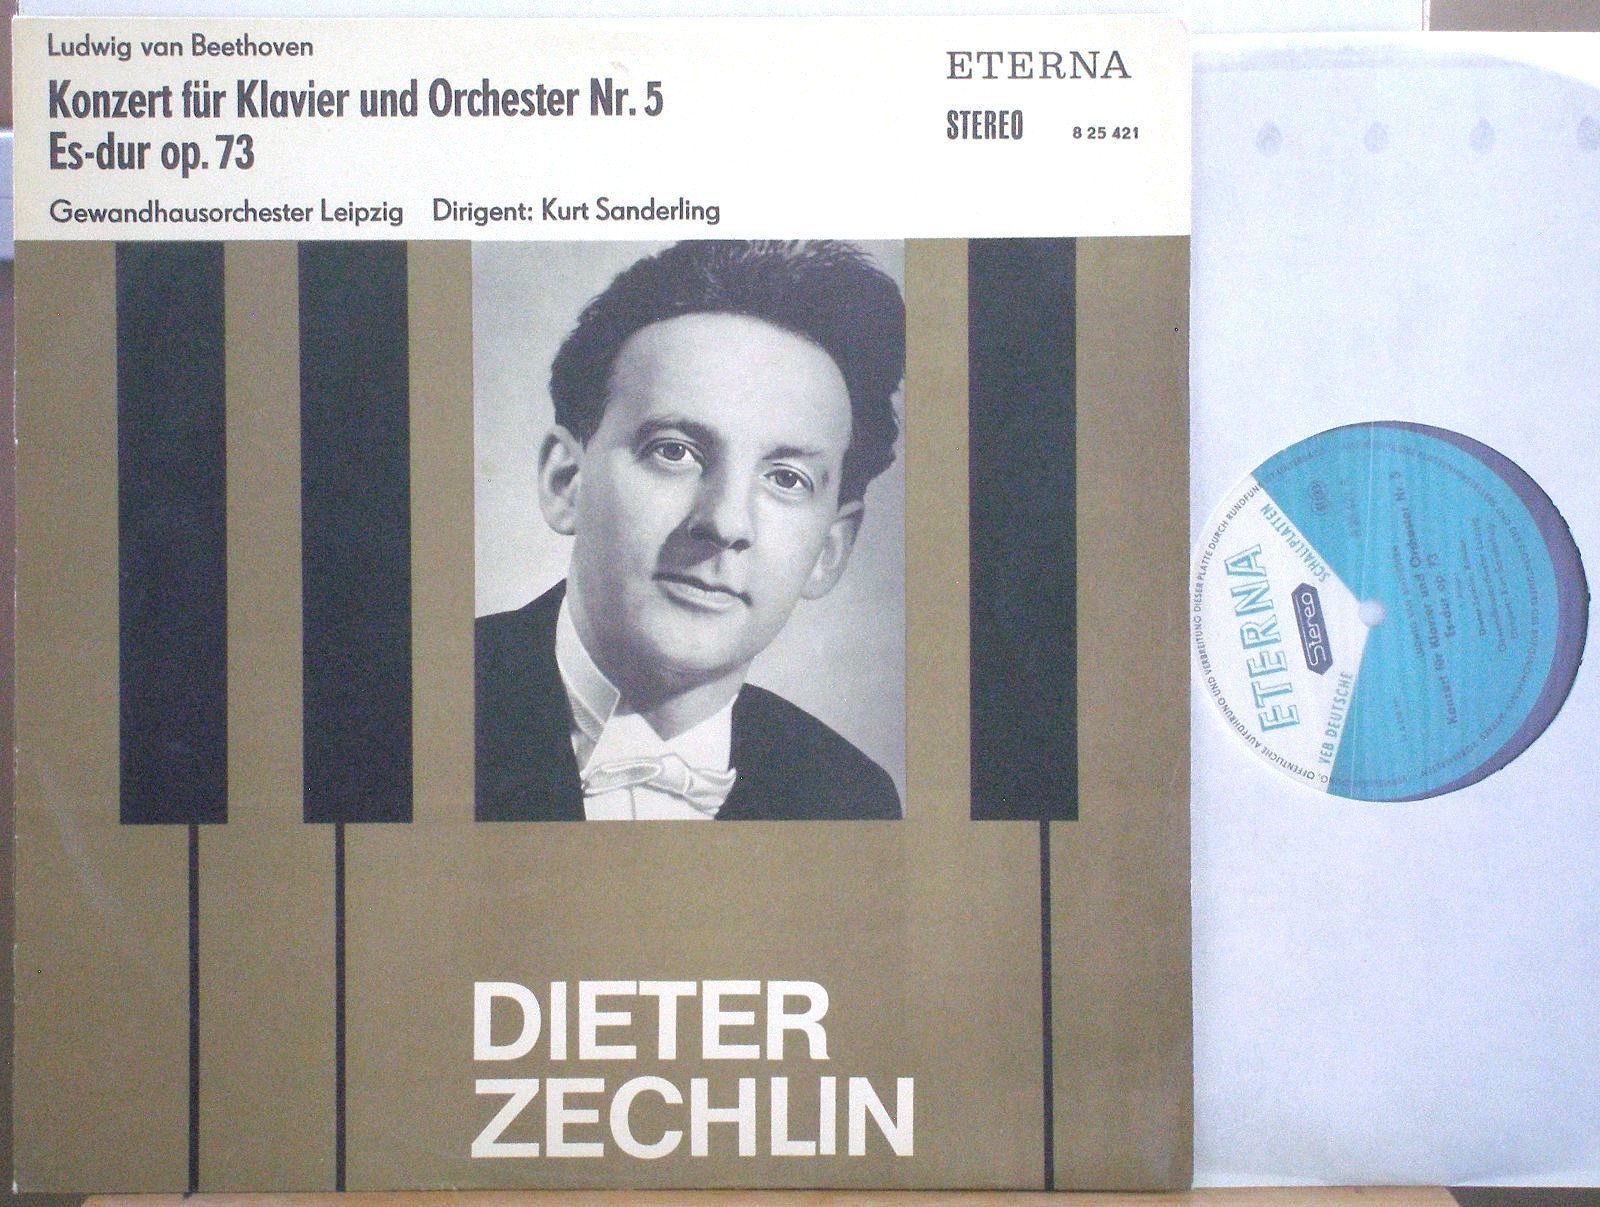 popsike.com - Dieter ZECHLIN Beethoven Piano Concerto Nr.5 ETERNA 825421  STEREO ED1 - auction details